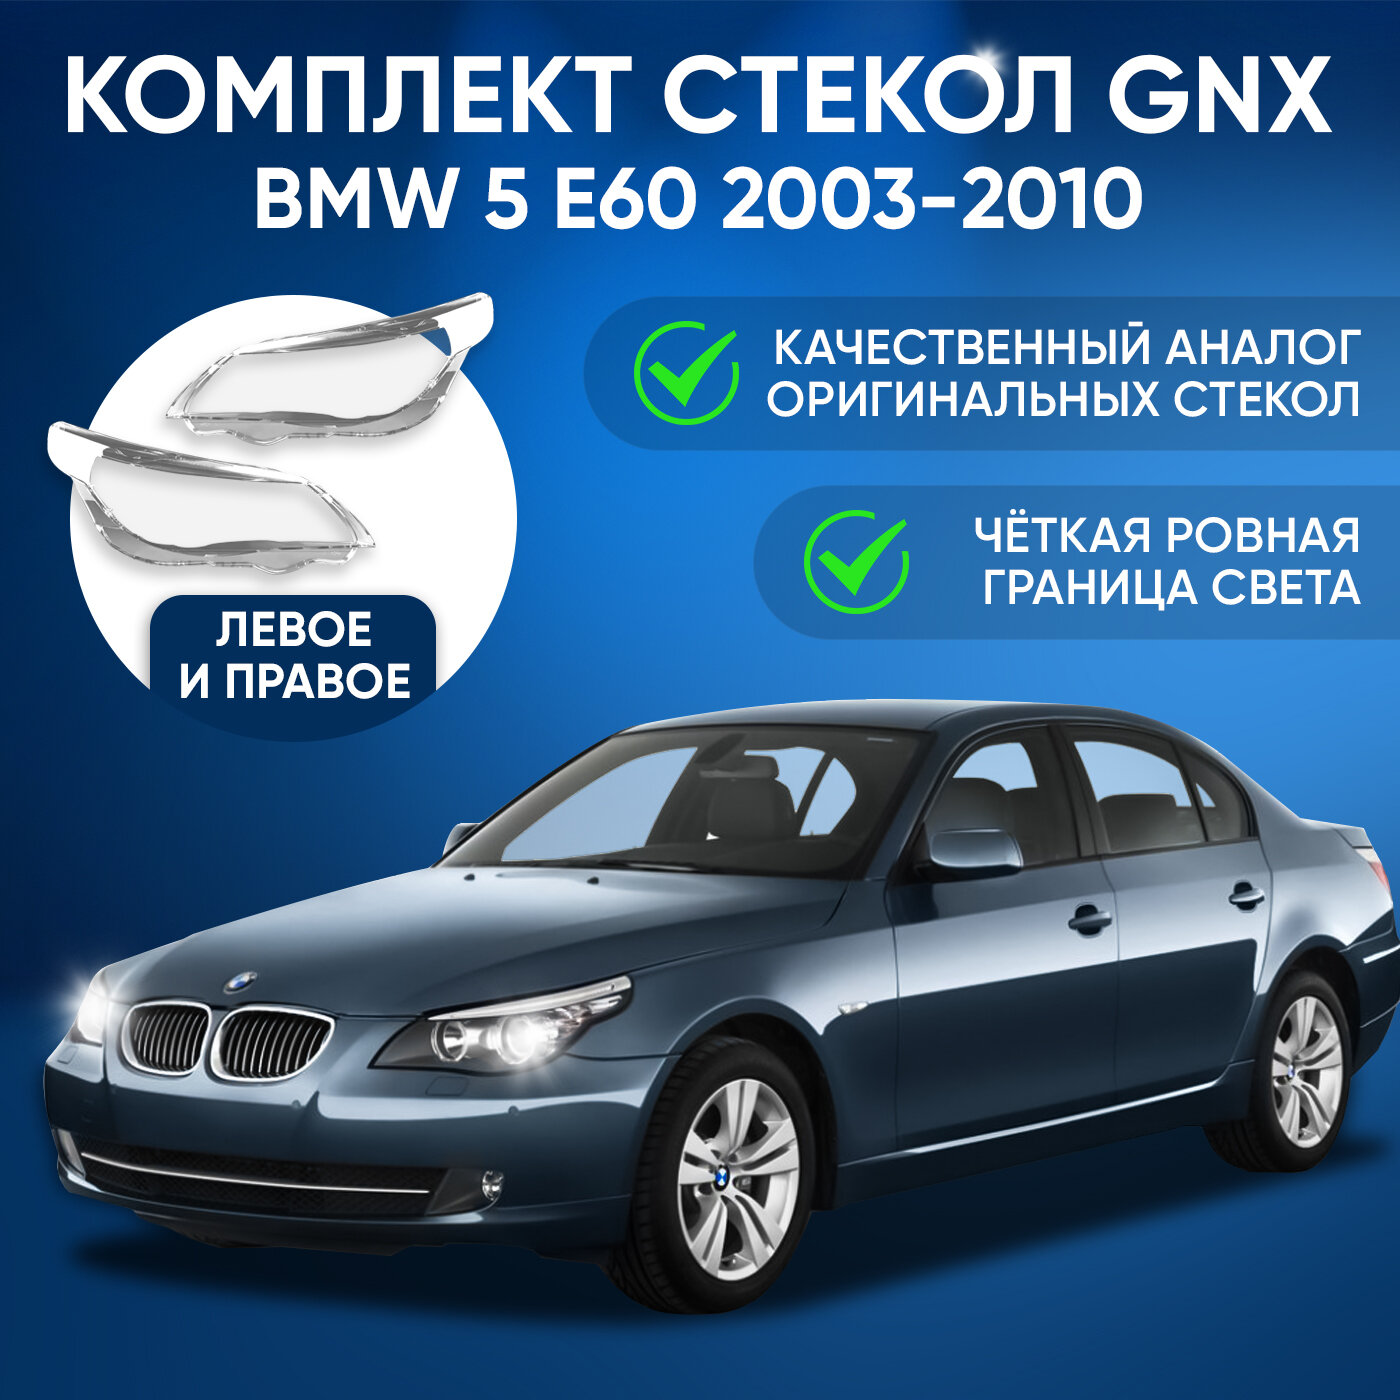 Стекло фары, GNX, для автомобилей BMW 5 E60 2003-2010, комплект (левое, правое), поликарбонат, из прозрачного материала, аналог